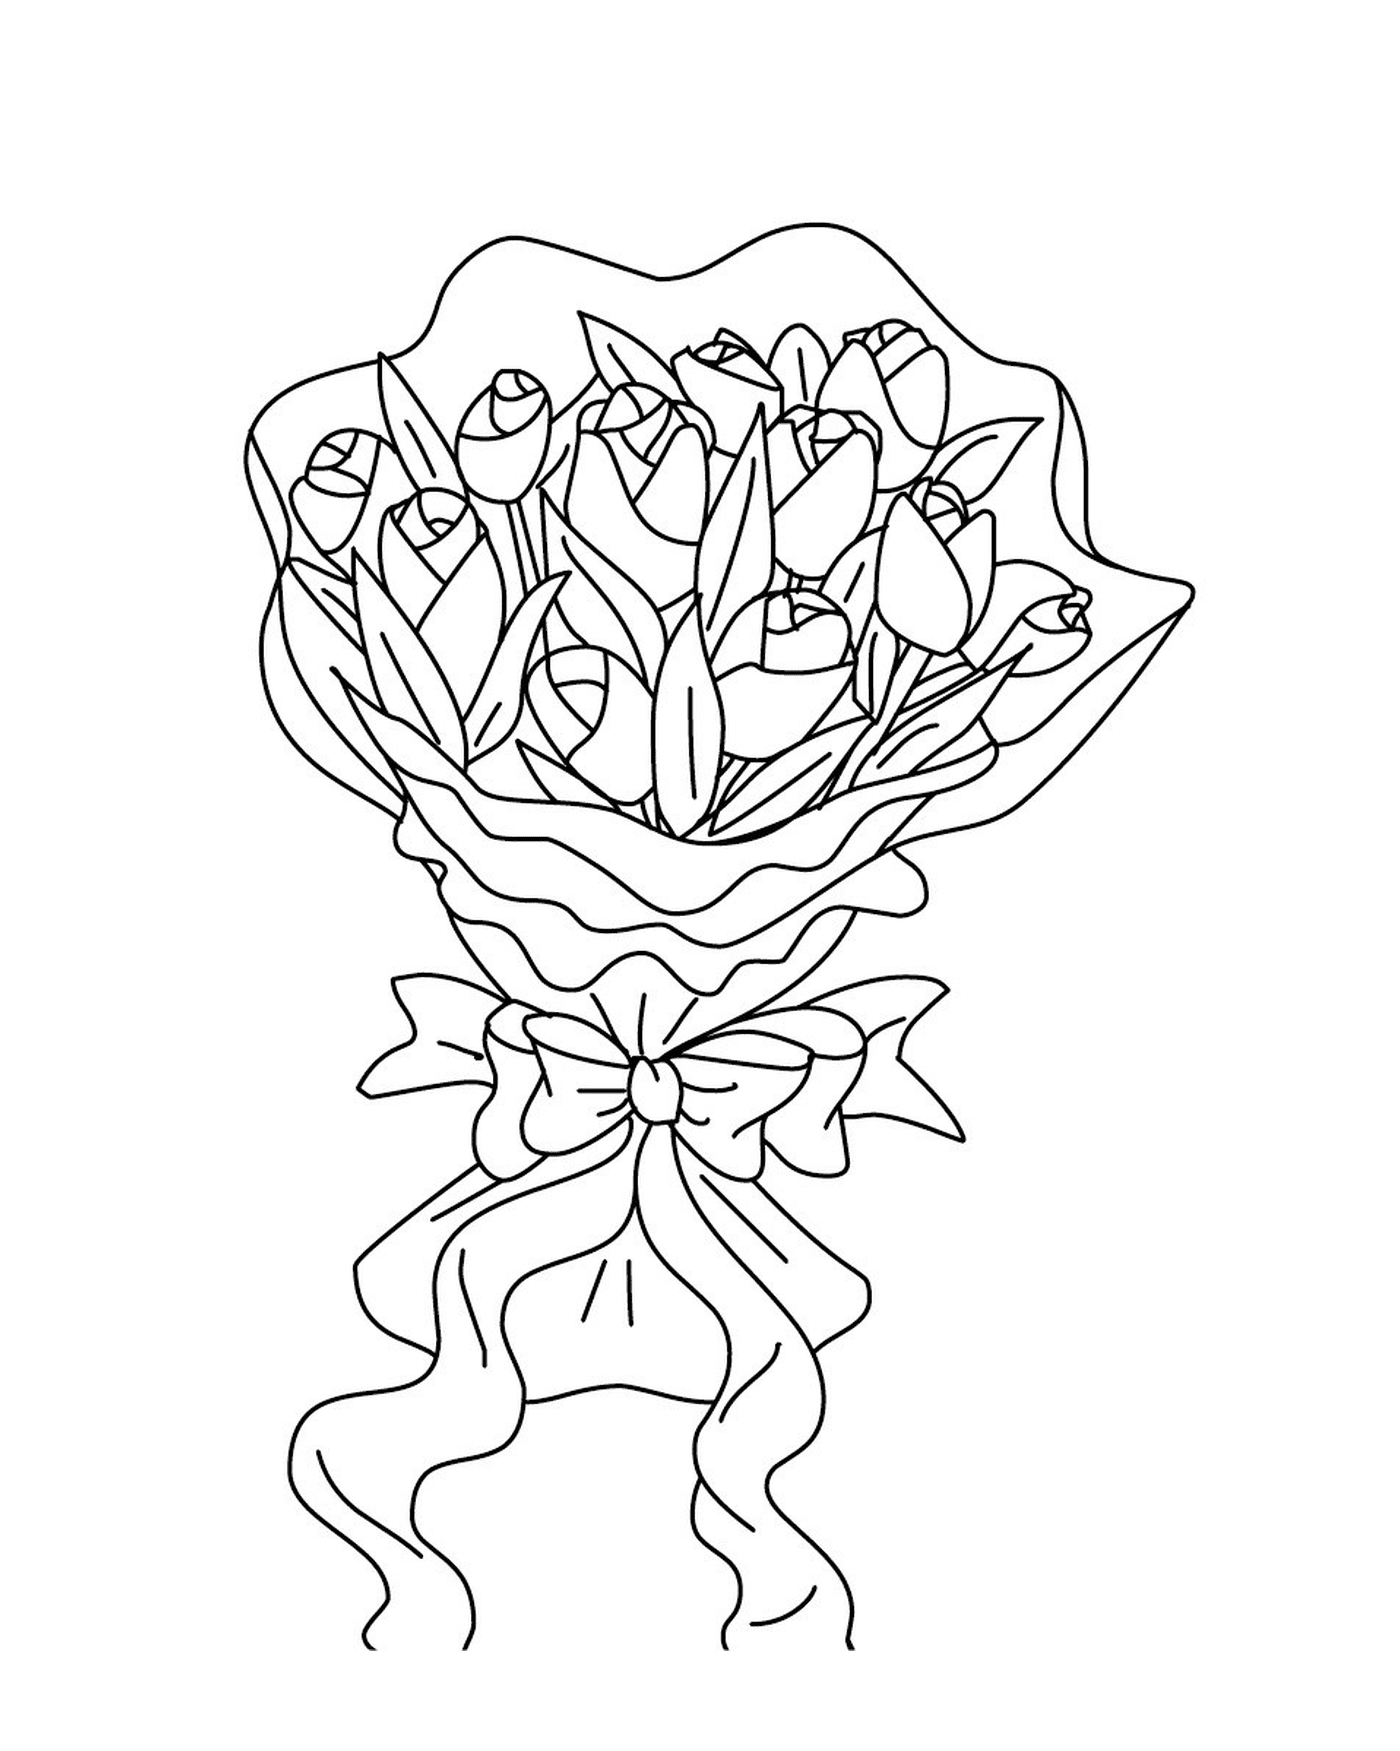  Ein Strauß Rosen mit einem Knoten 